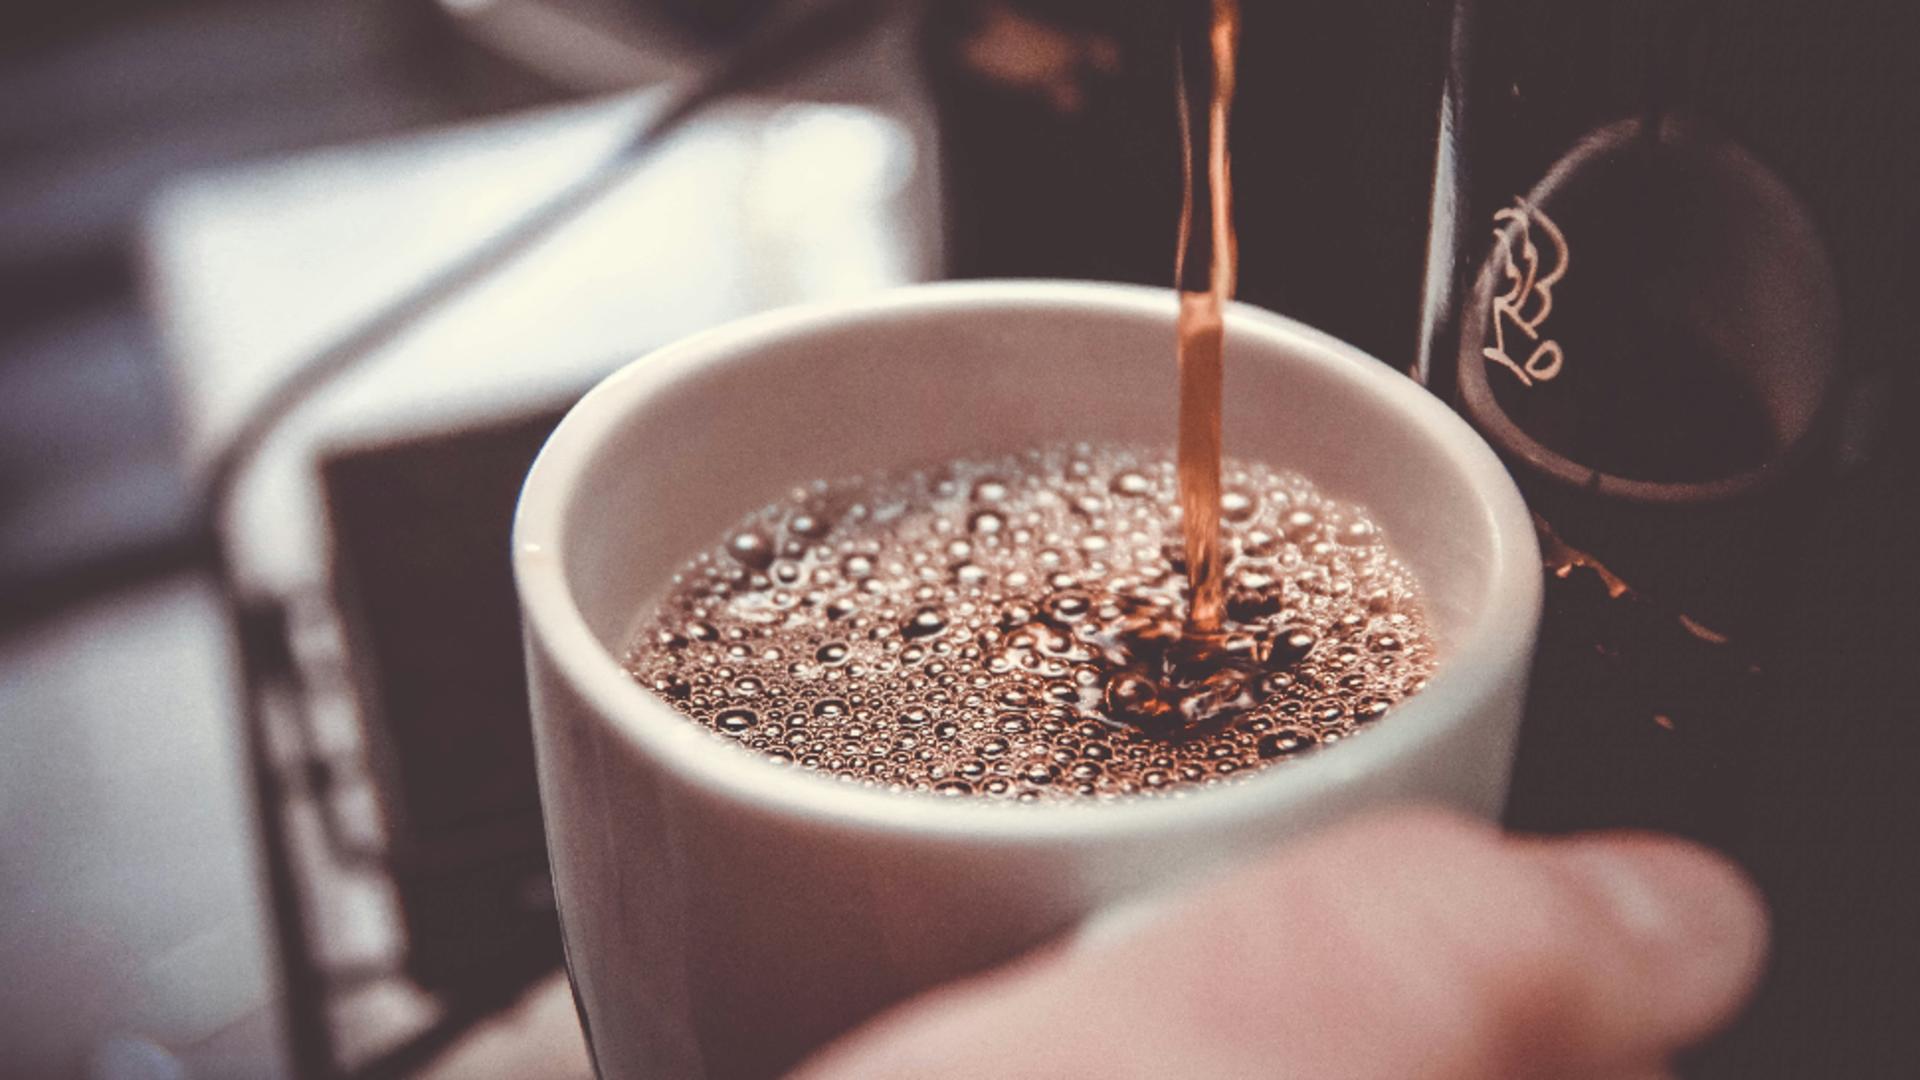 Secretele preparării celei mai bune cafele. Condimentele pe care să le adaugi în licoare magică, ce ne trezește în fiecare zi